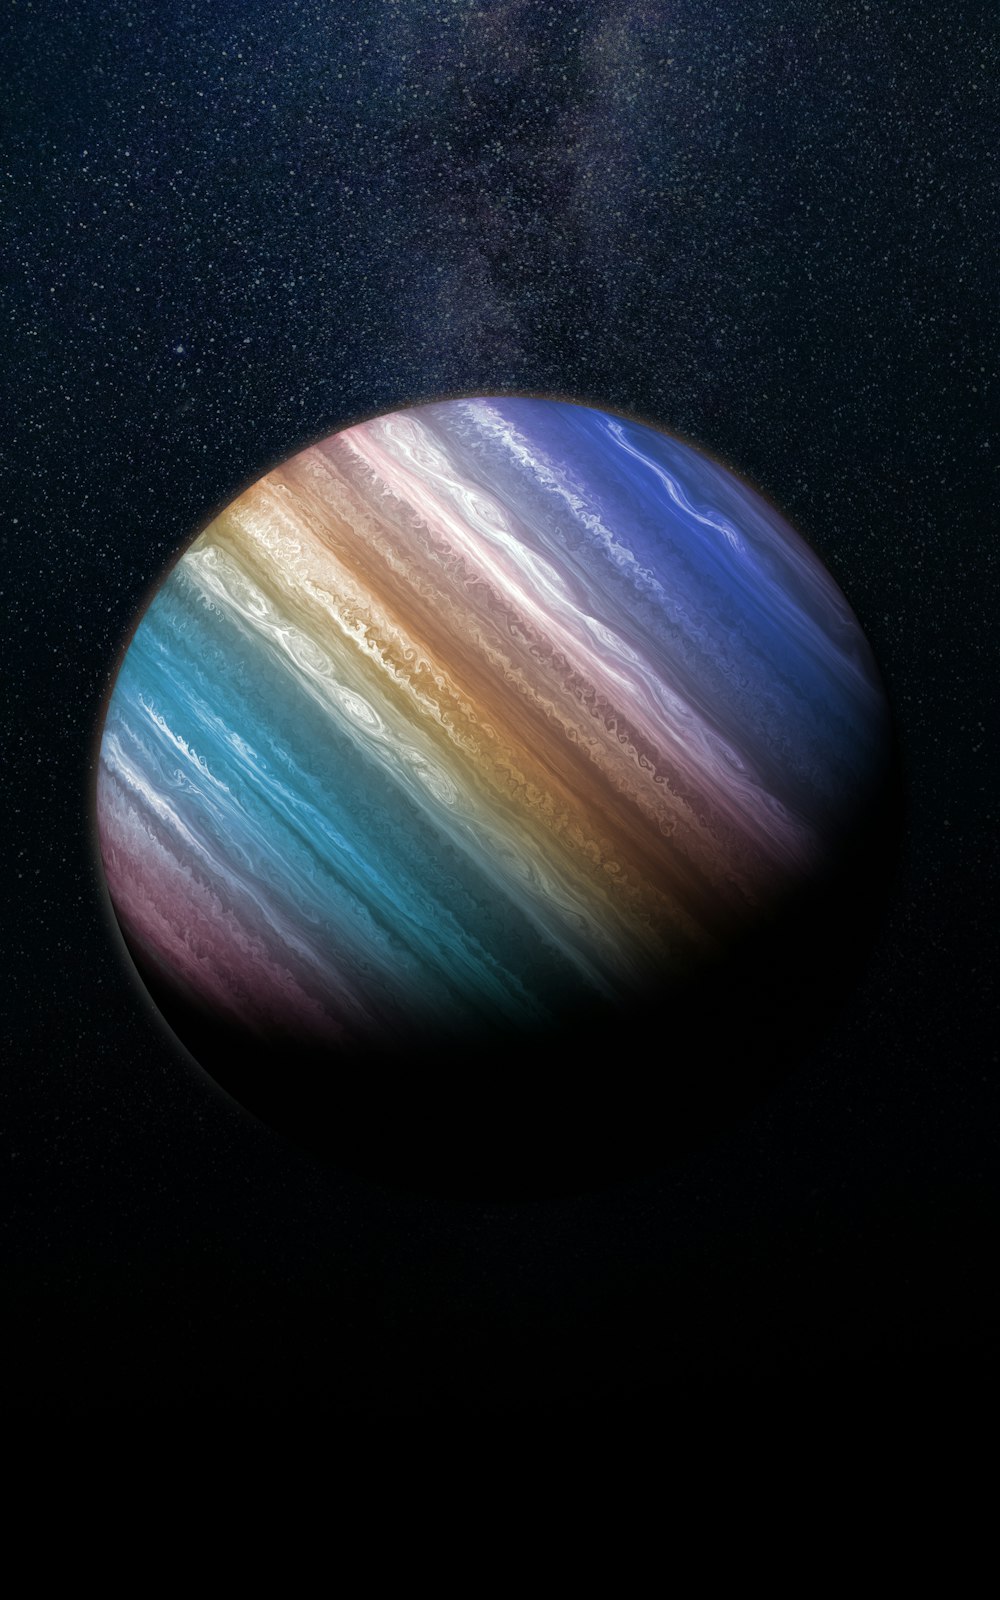 Une image de la planète Saturne prise depuis l’espace